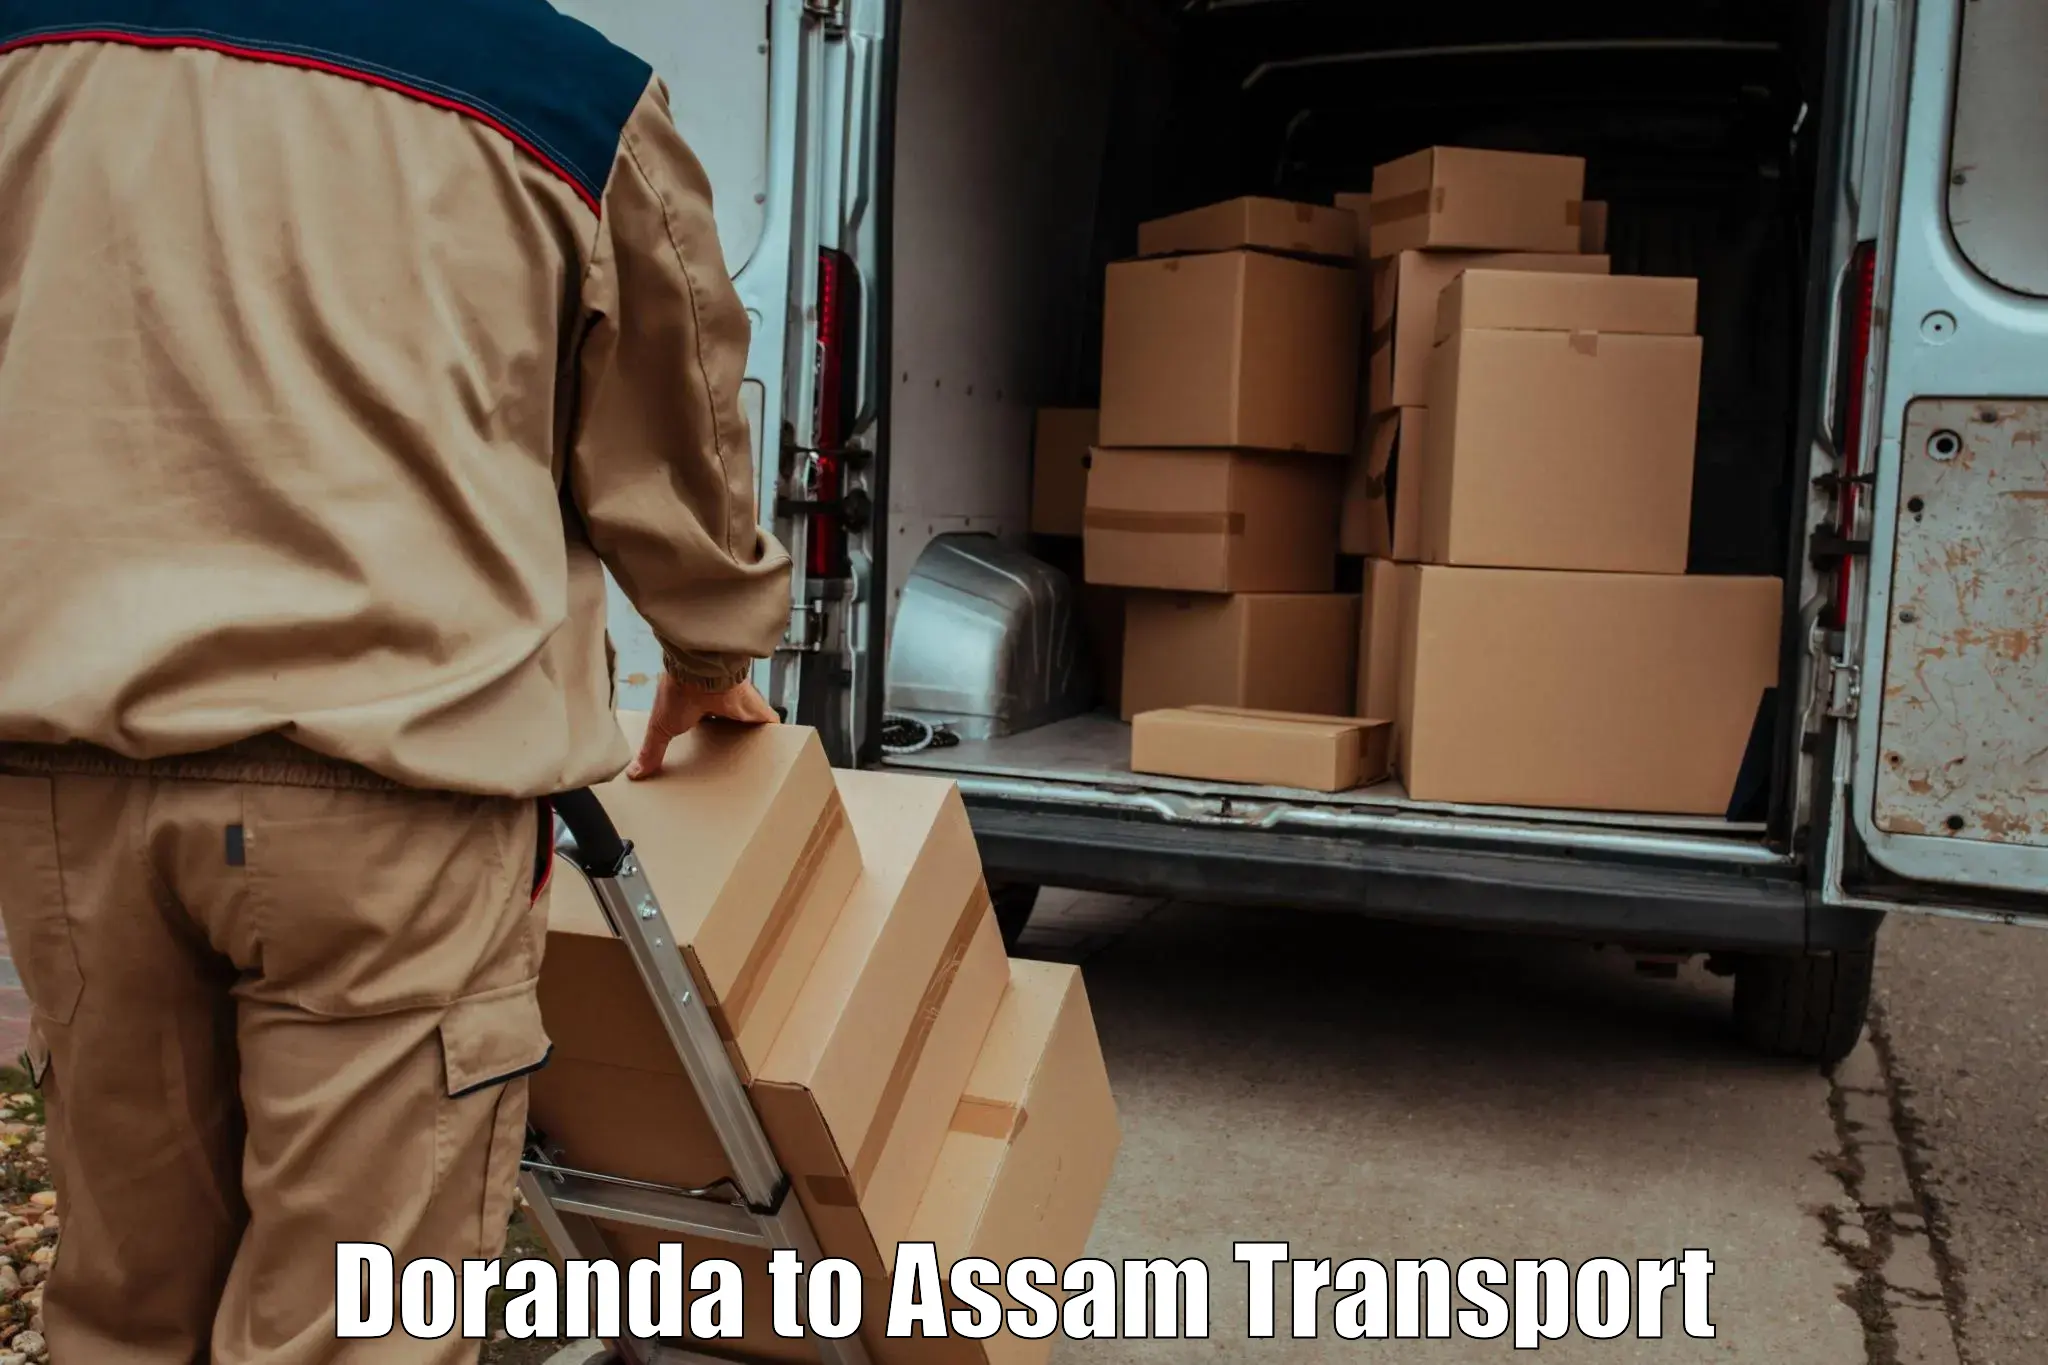 Transport shared services Doranda to Hajo